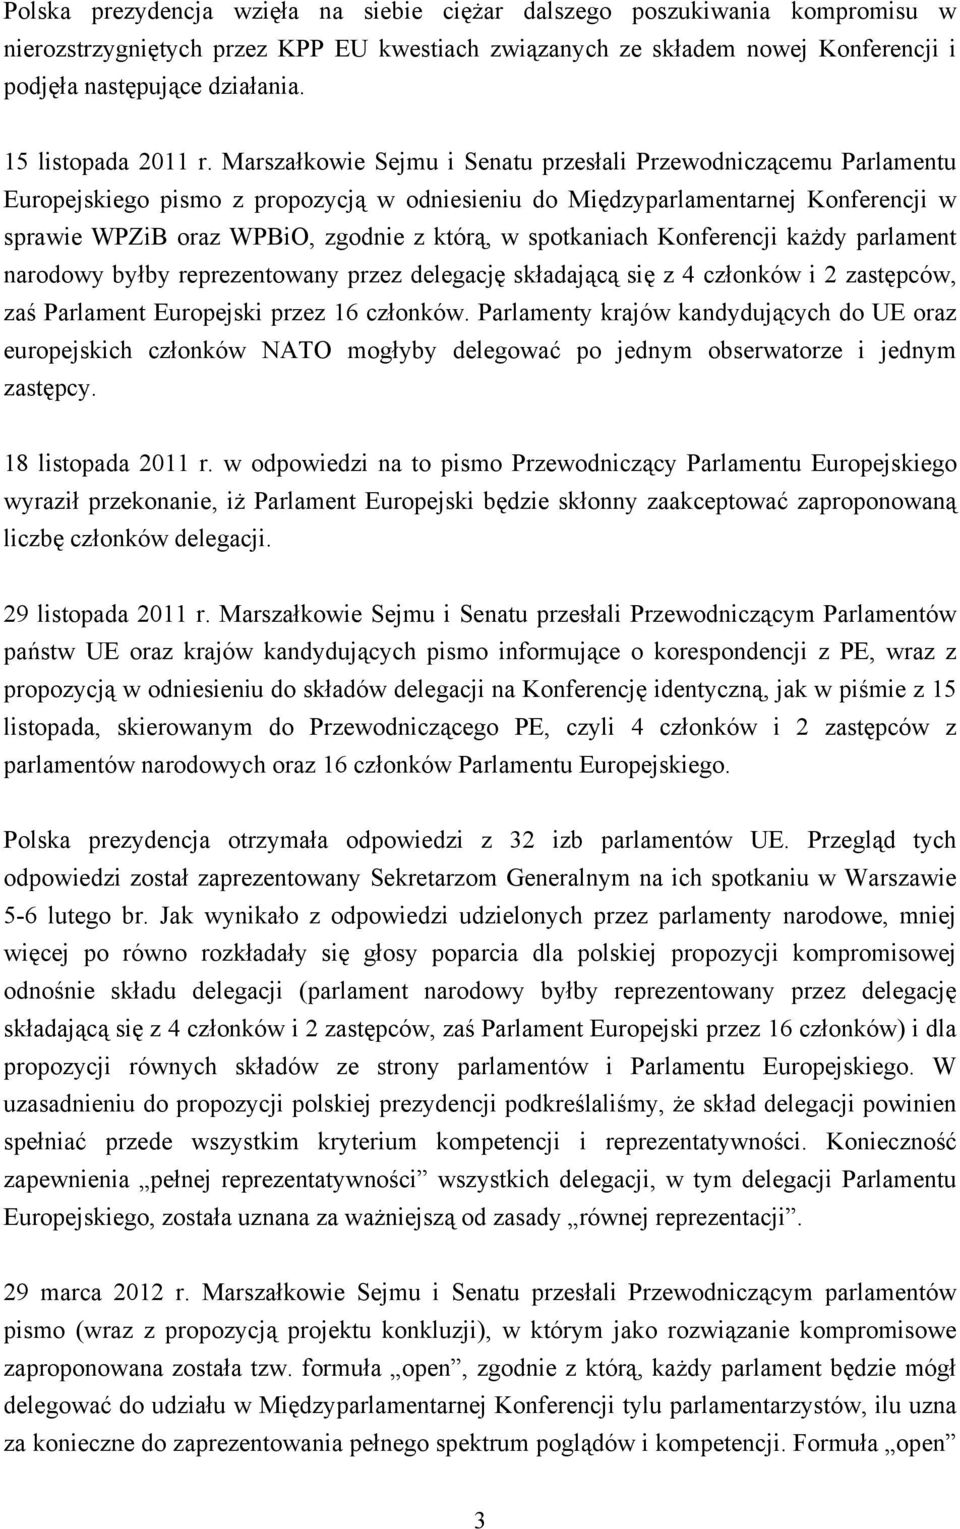 Marszałkowie Sejmu i Senatu przesłali Przewodniczącemu Parlamentu Europejskiego pismo z propozycją w odniesieniu do Międzyparlamentarnej Konferencji w sprawie WPZiB oraz WPBiO, zgodnie z którą, w